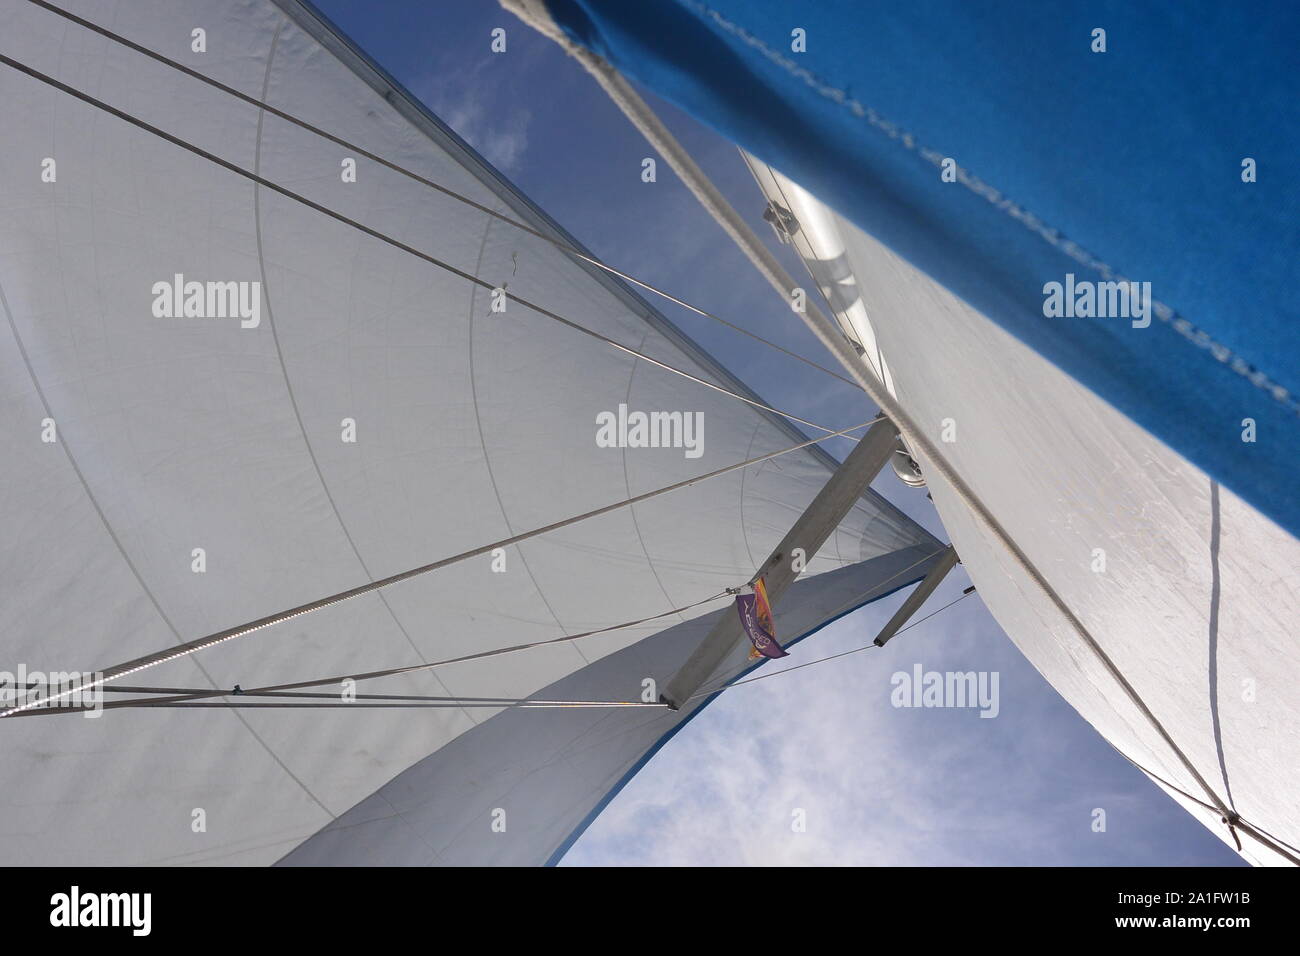 Weiß & Blau Segel eine Segelyacht im Wind. Mast und Rigg auf dem Segelboot Stockfoto